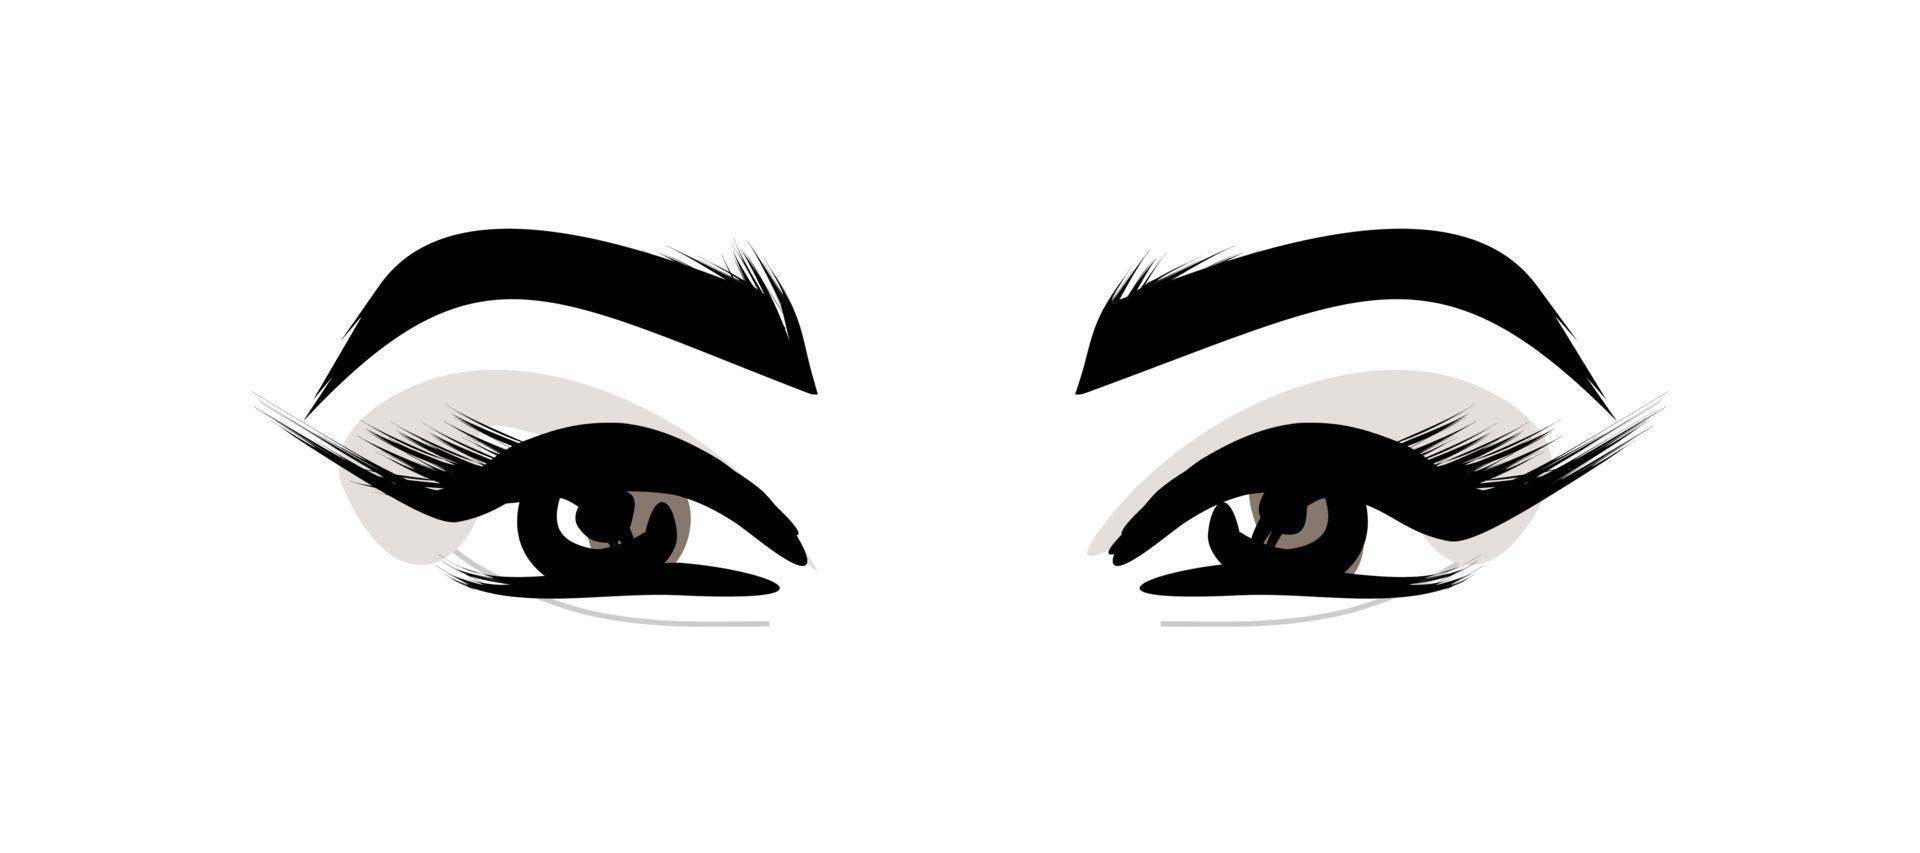 mirada de ojos femeninos. pestañas y cejas. maquillaje - ilustración vectorial aislado sobre fondo blanco. cosméticos de mujer vector